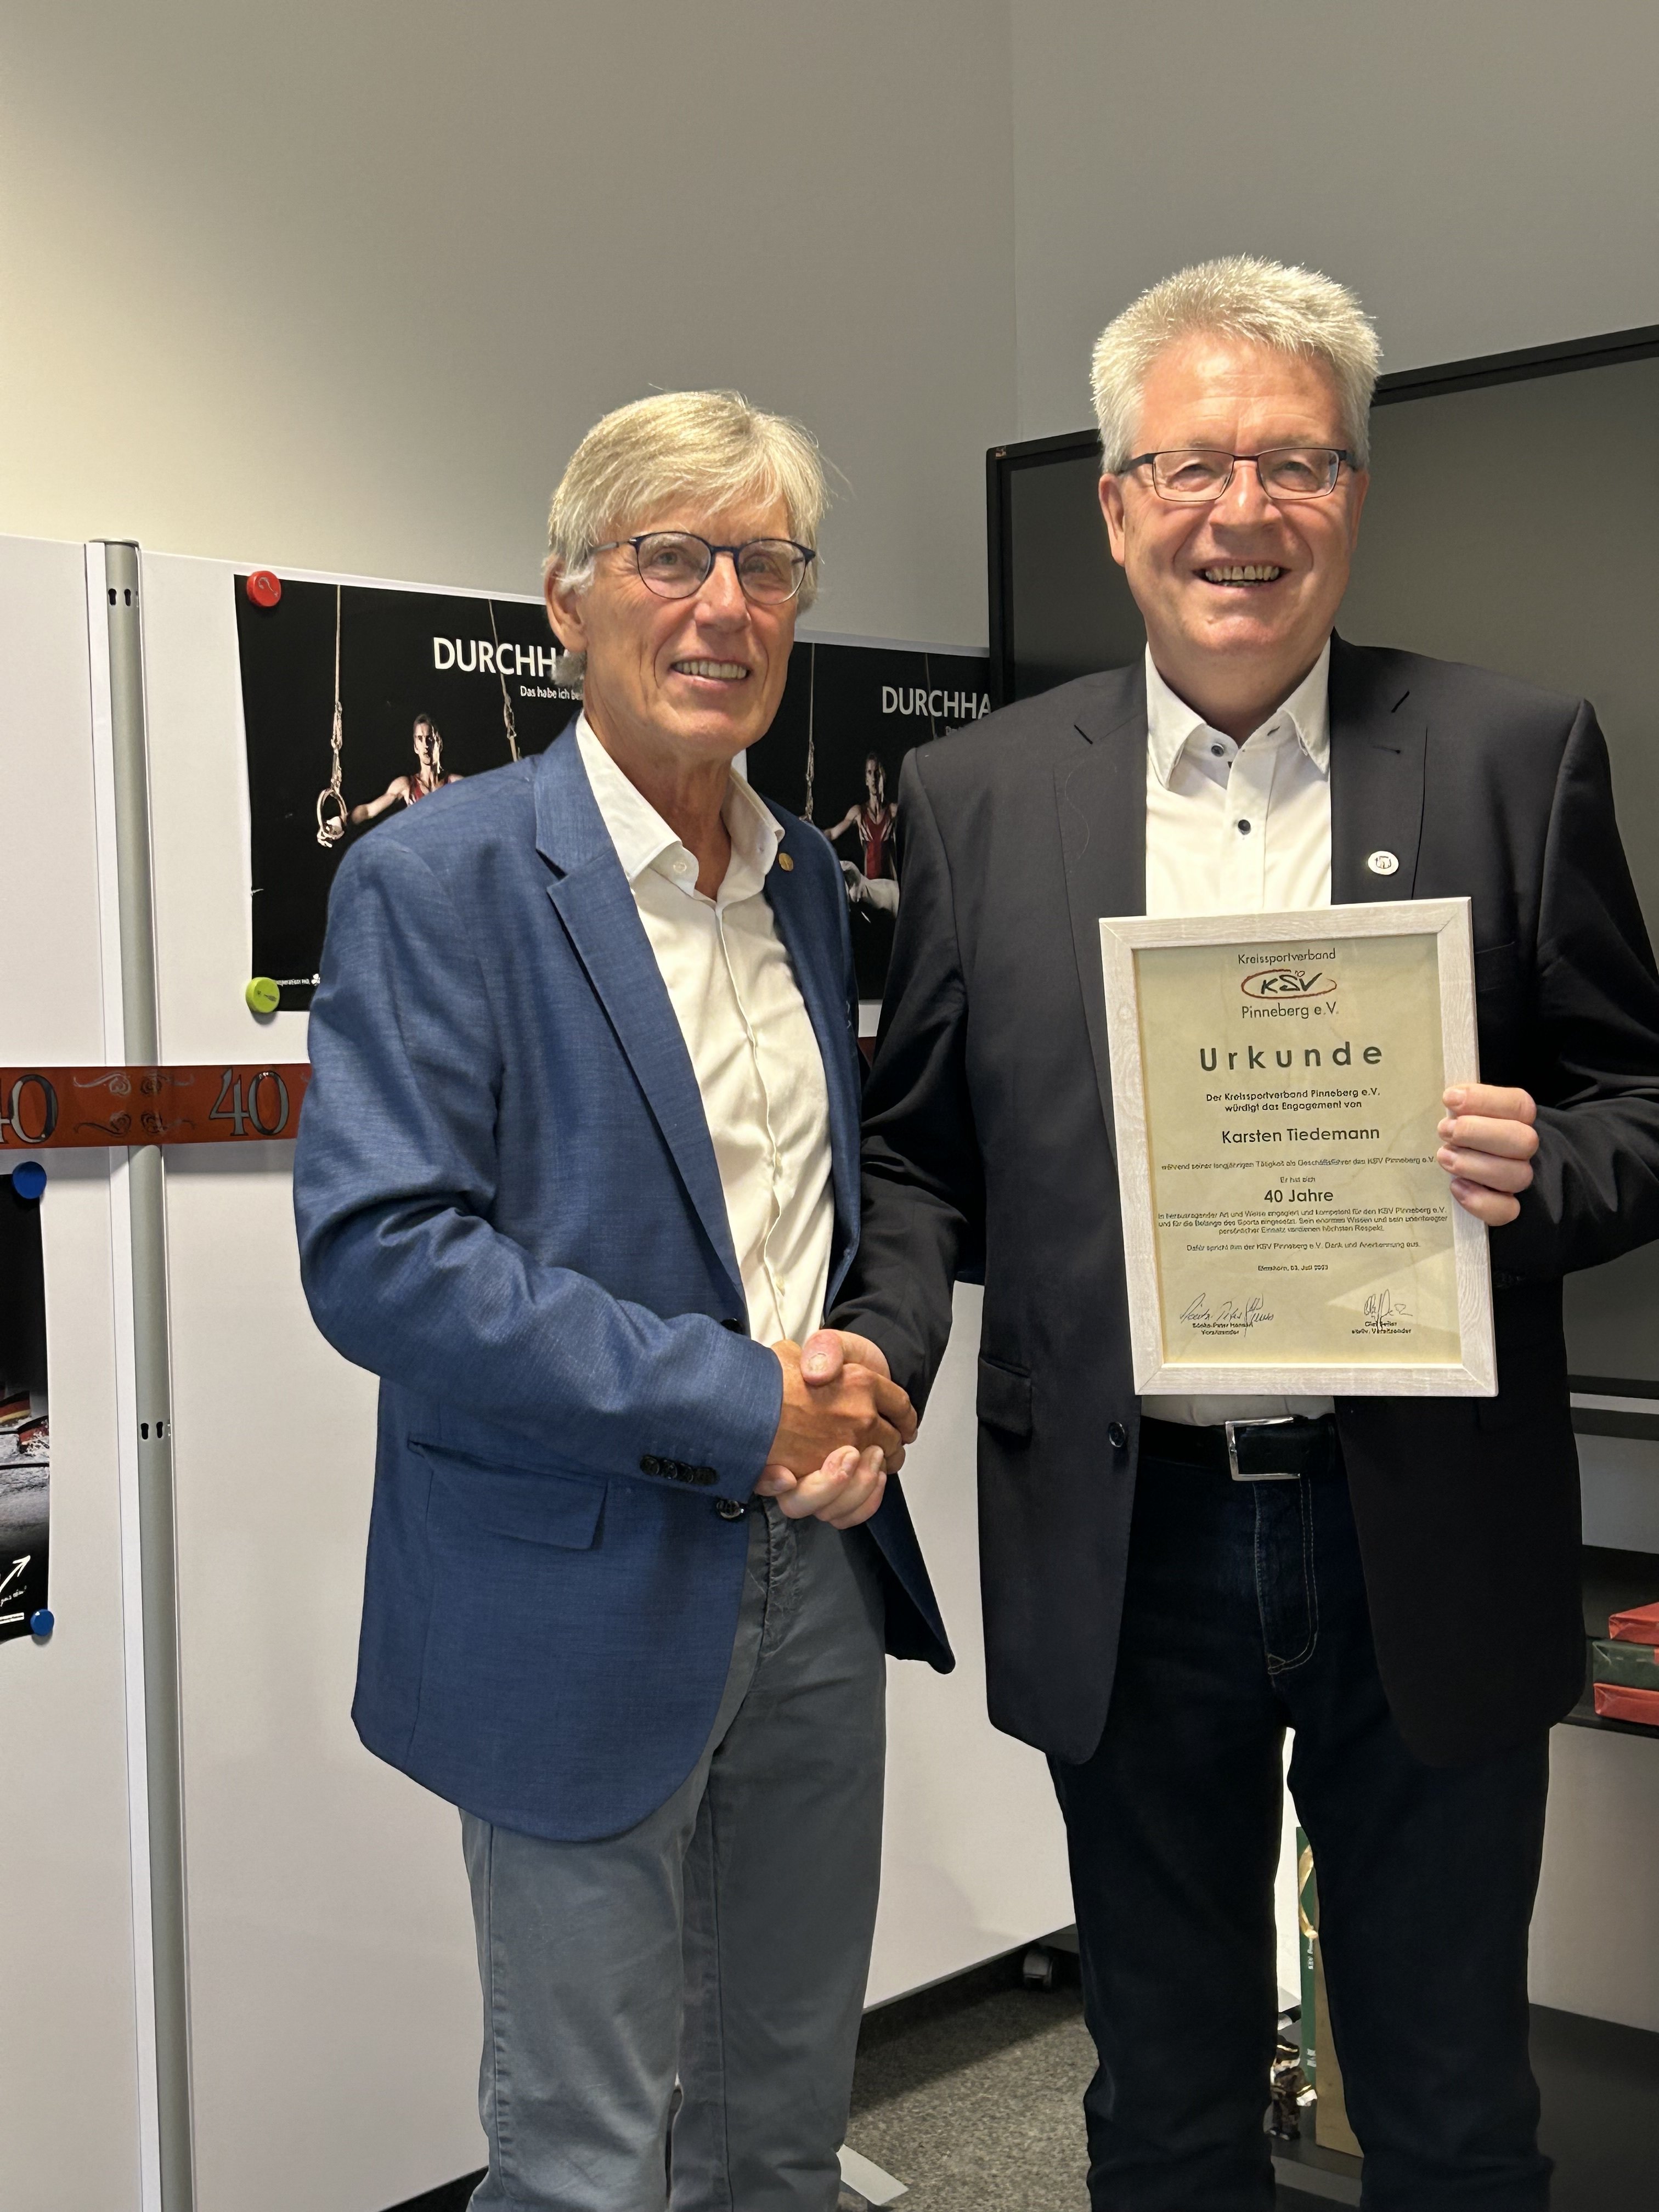 KSV-Vorsitzender, Sönke-P. Hansen, gratuliert Karsten Tiedemann u.a. mit einer Urkunde für 40 Jahre als Geschäftsführer im KSV Pinneberg